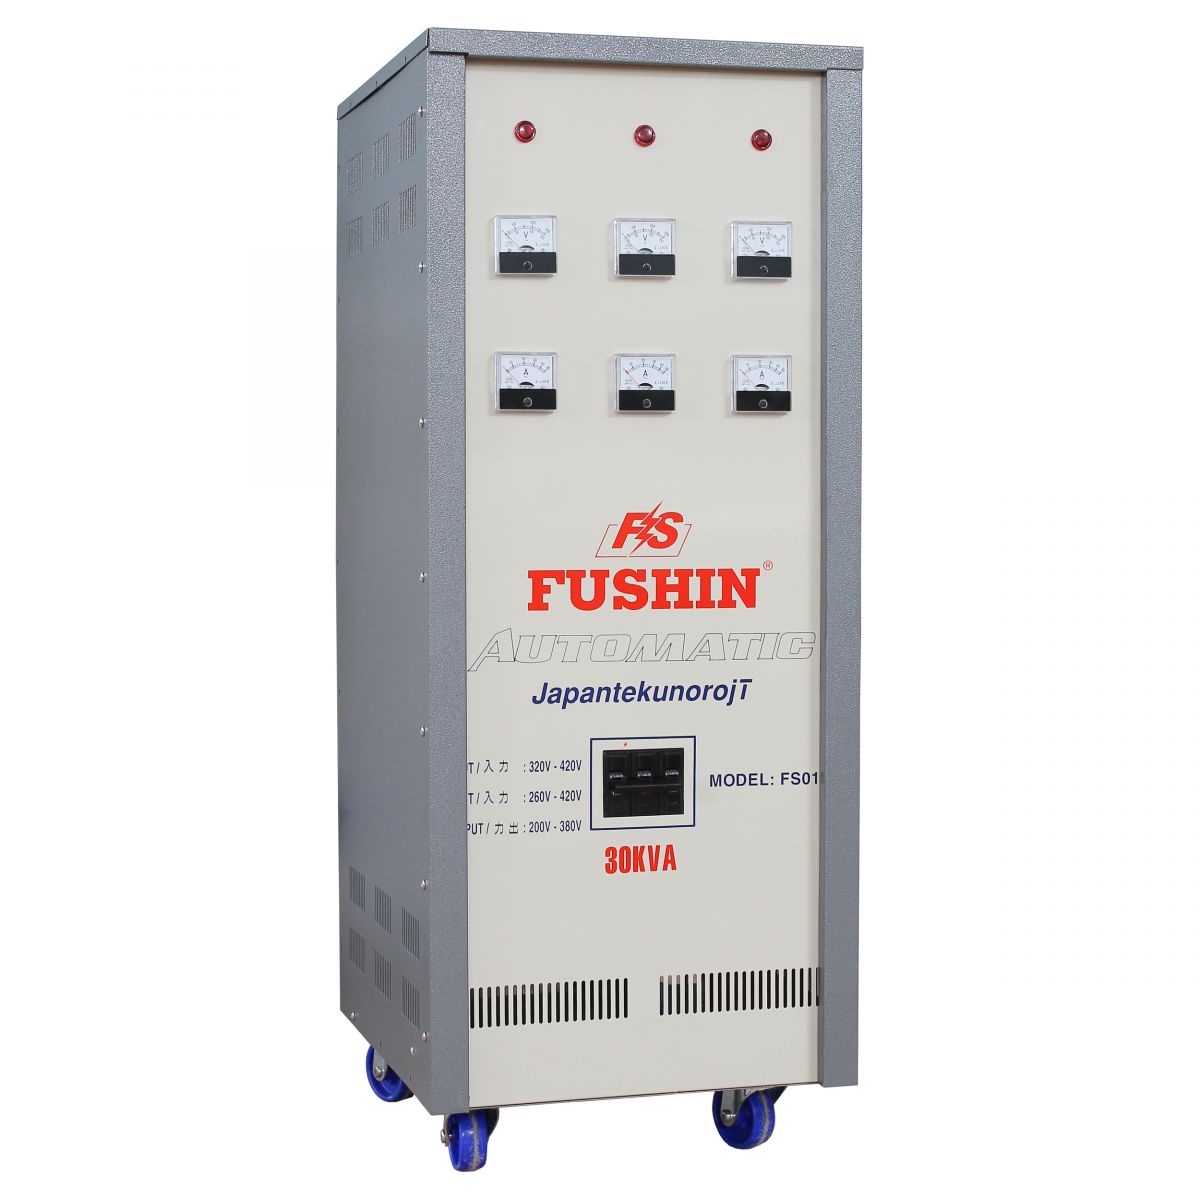 Khảo sát giá thành của các loại ổn áp 3 pha Fushin